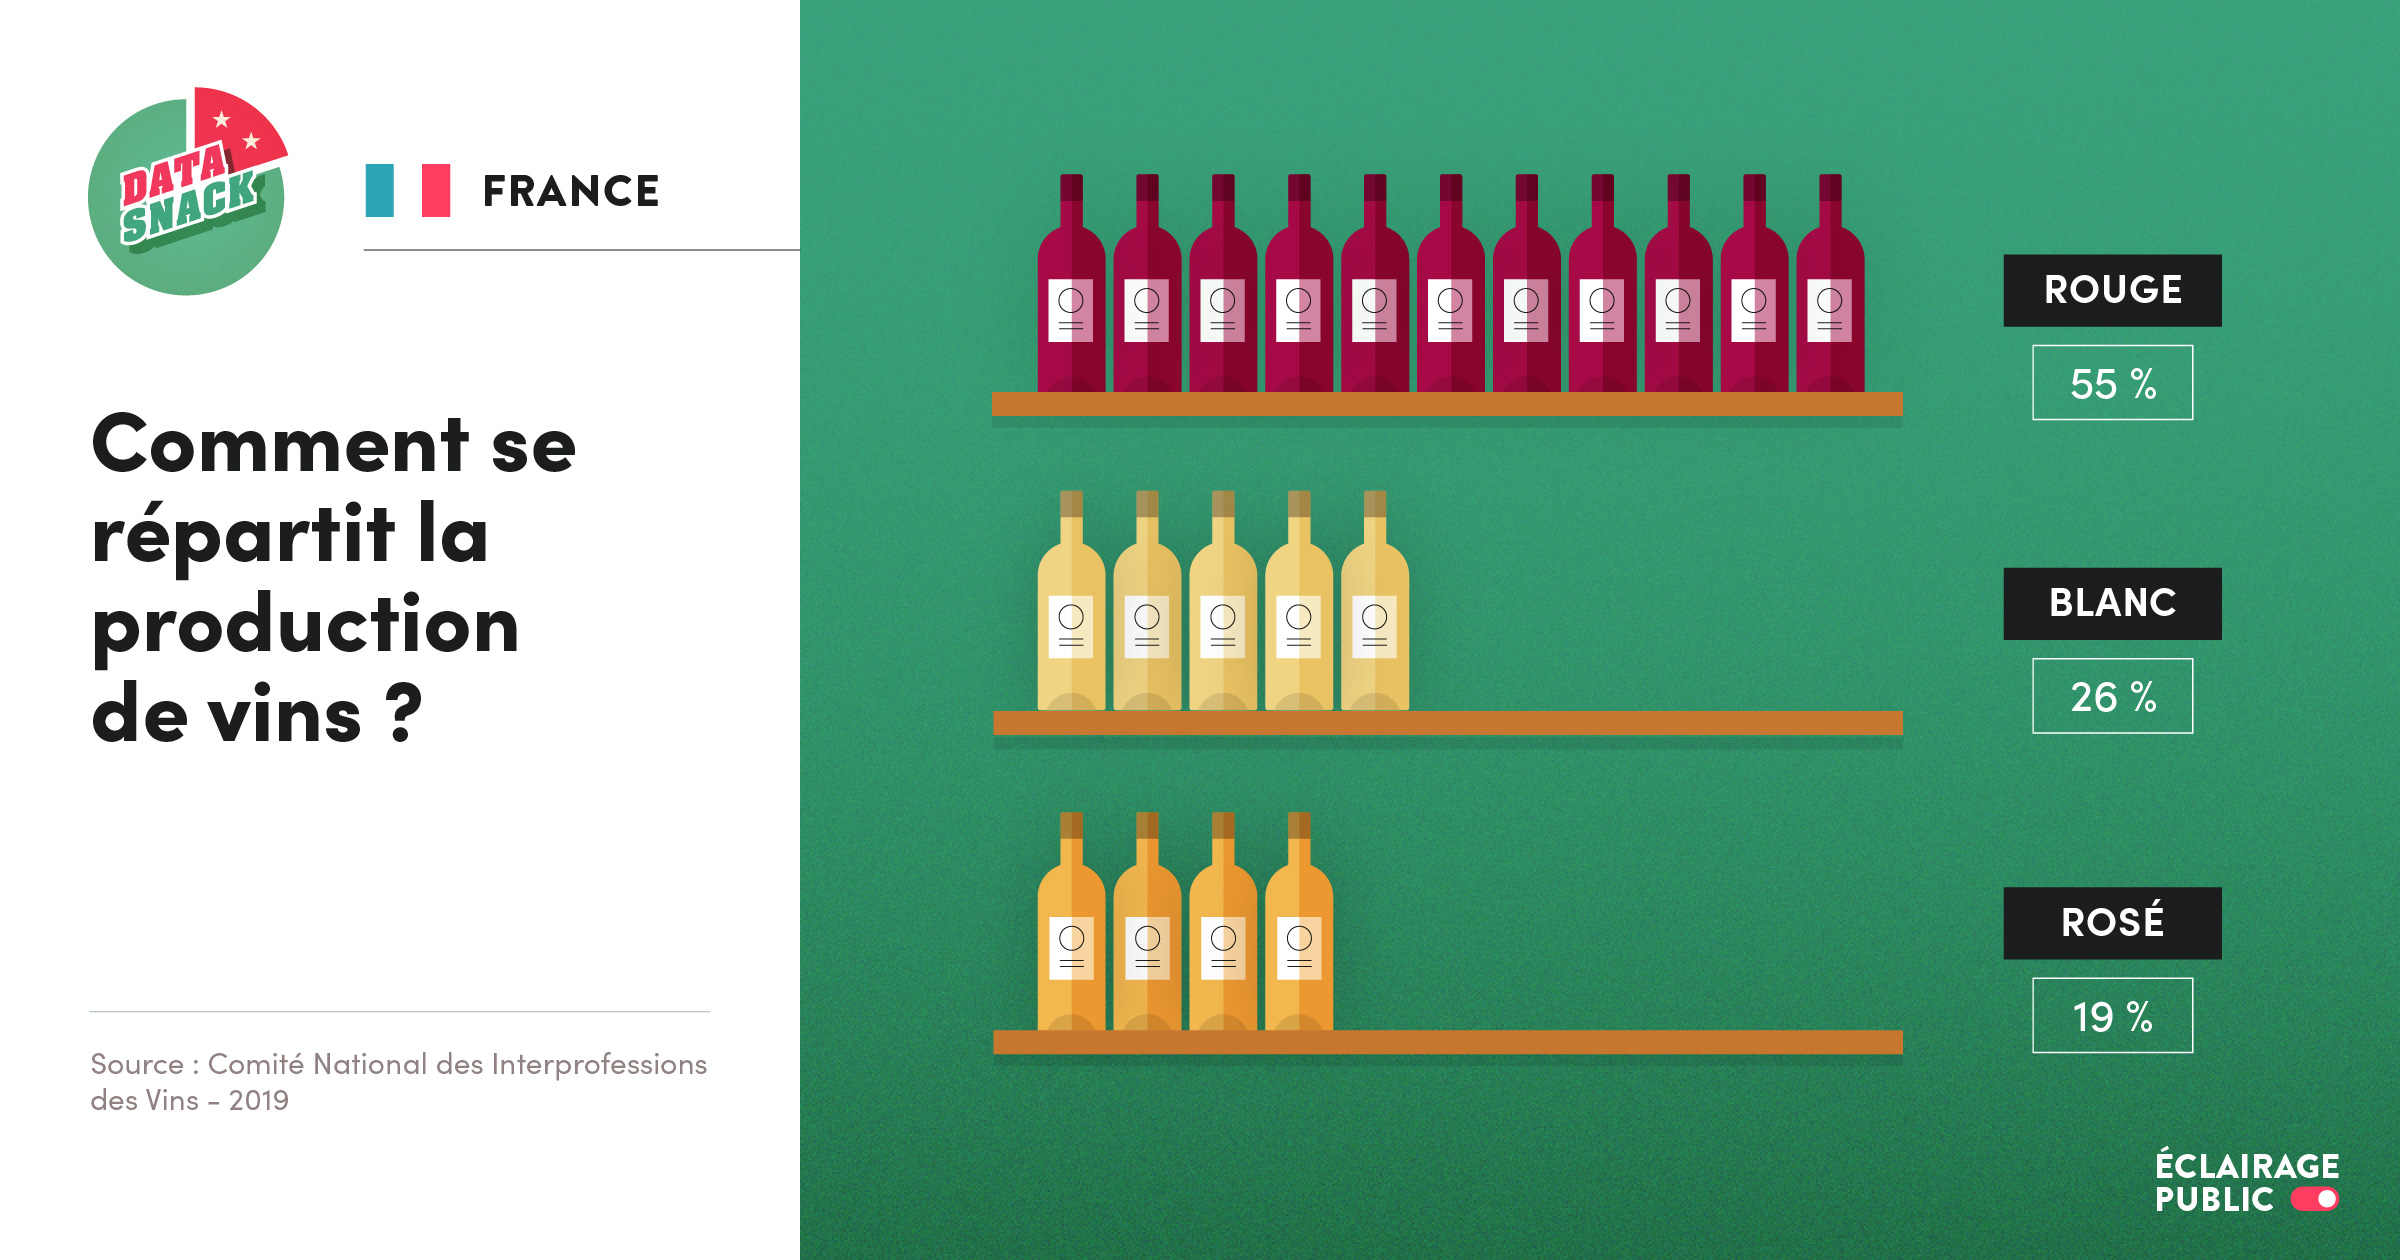 Data visualisation de la répartition de la production de vins en France en fonction de la couleur (rouge, blanc, rosé). © Infographie ÉCLAIRAGE PUBLIC